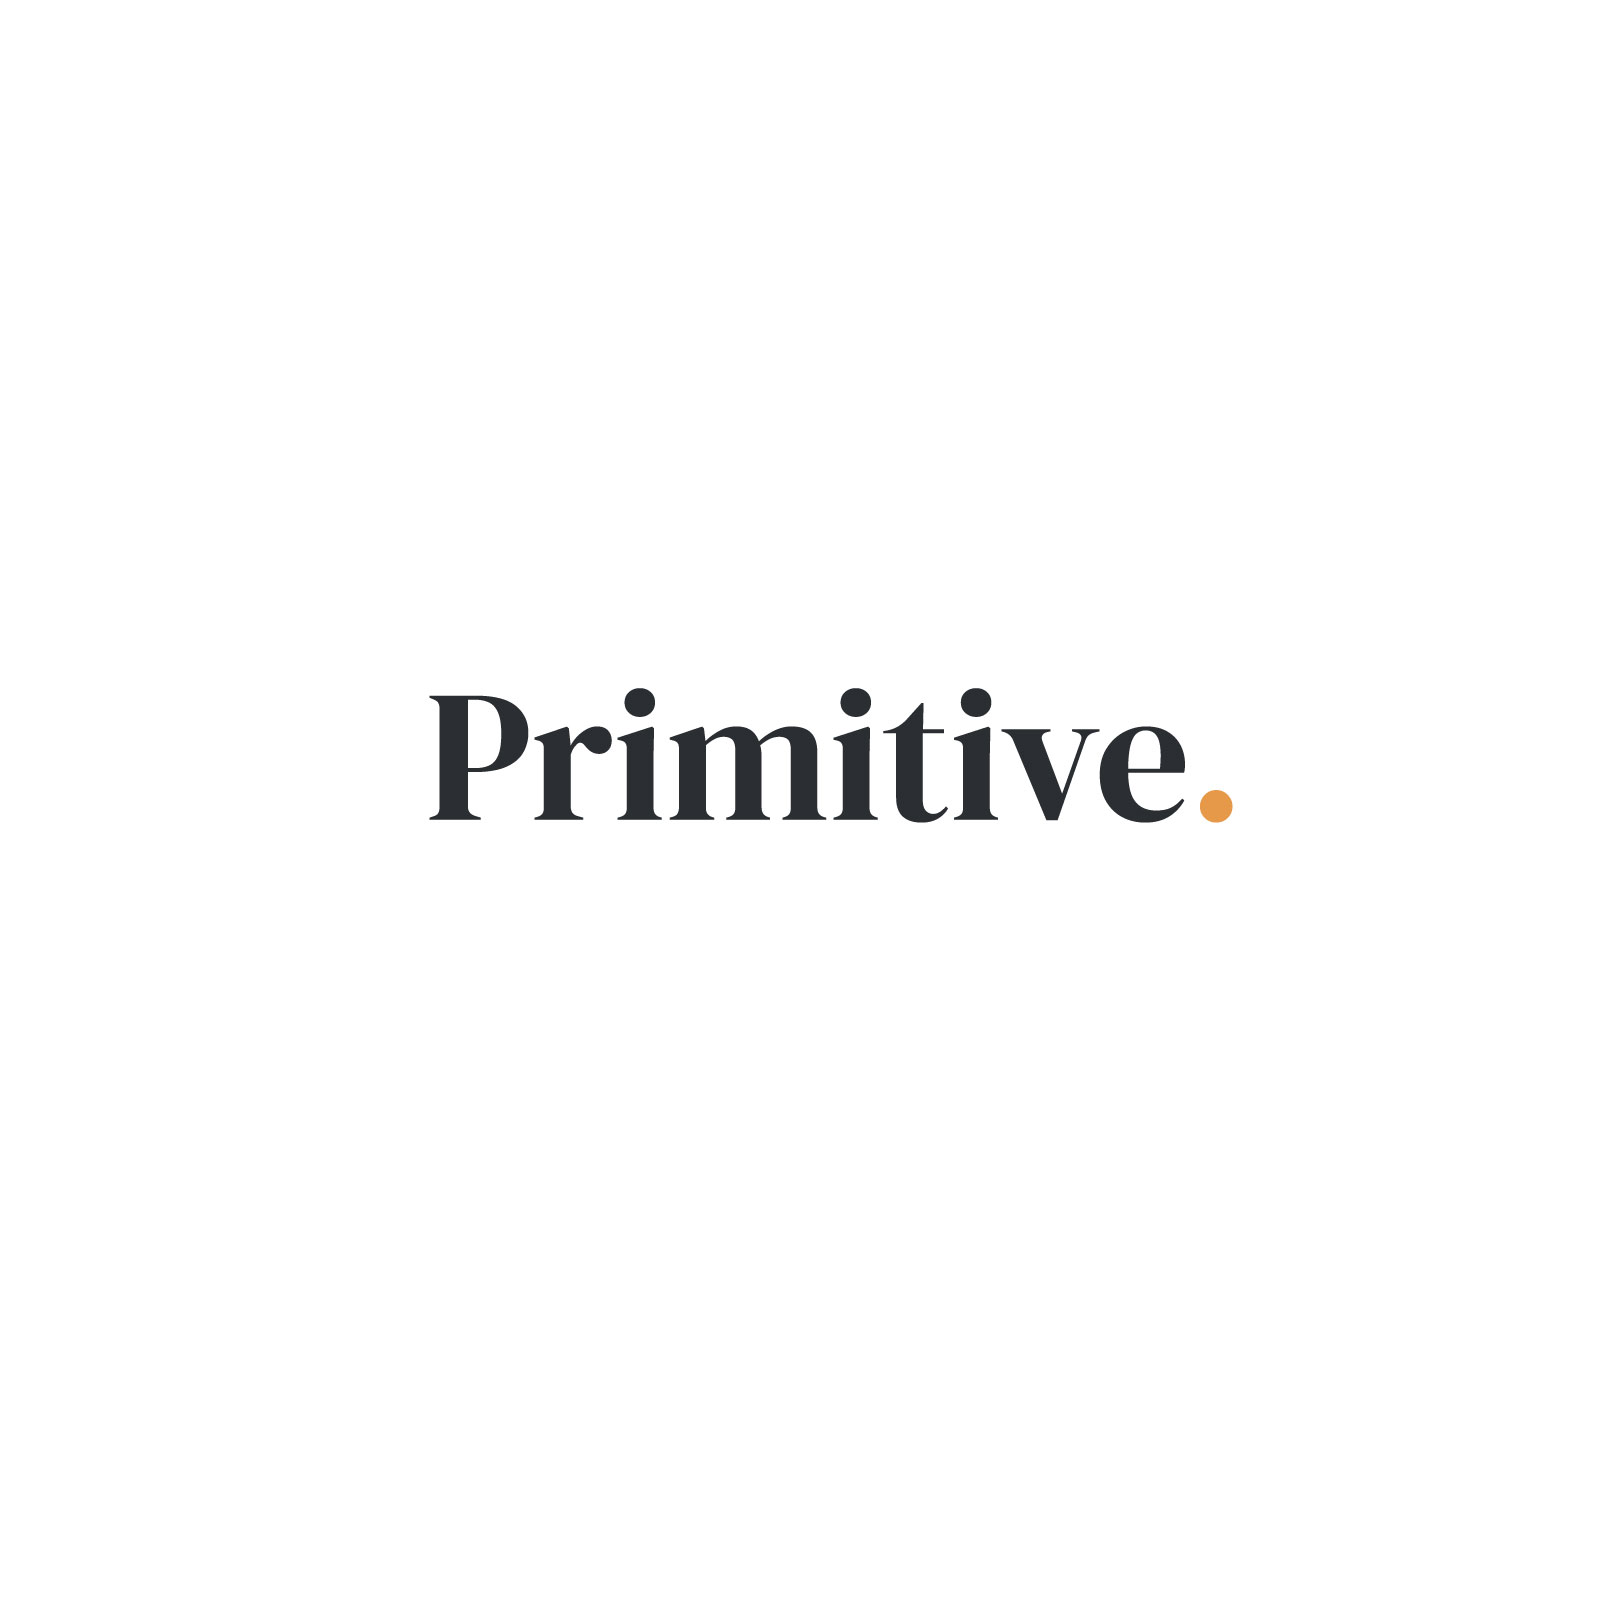 Primitive Logo on White